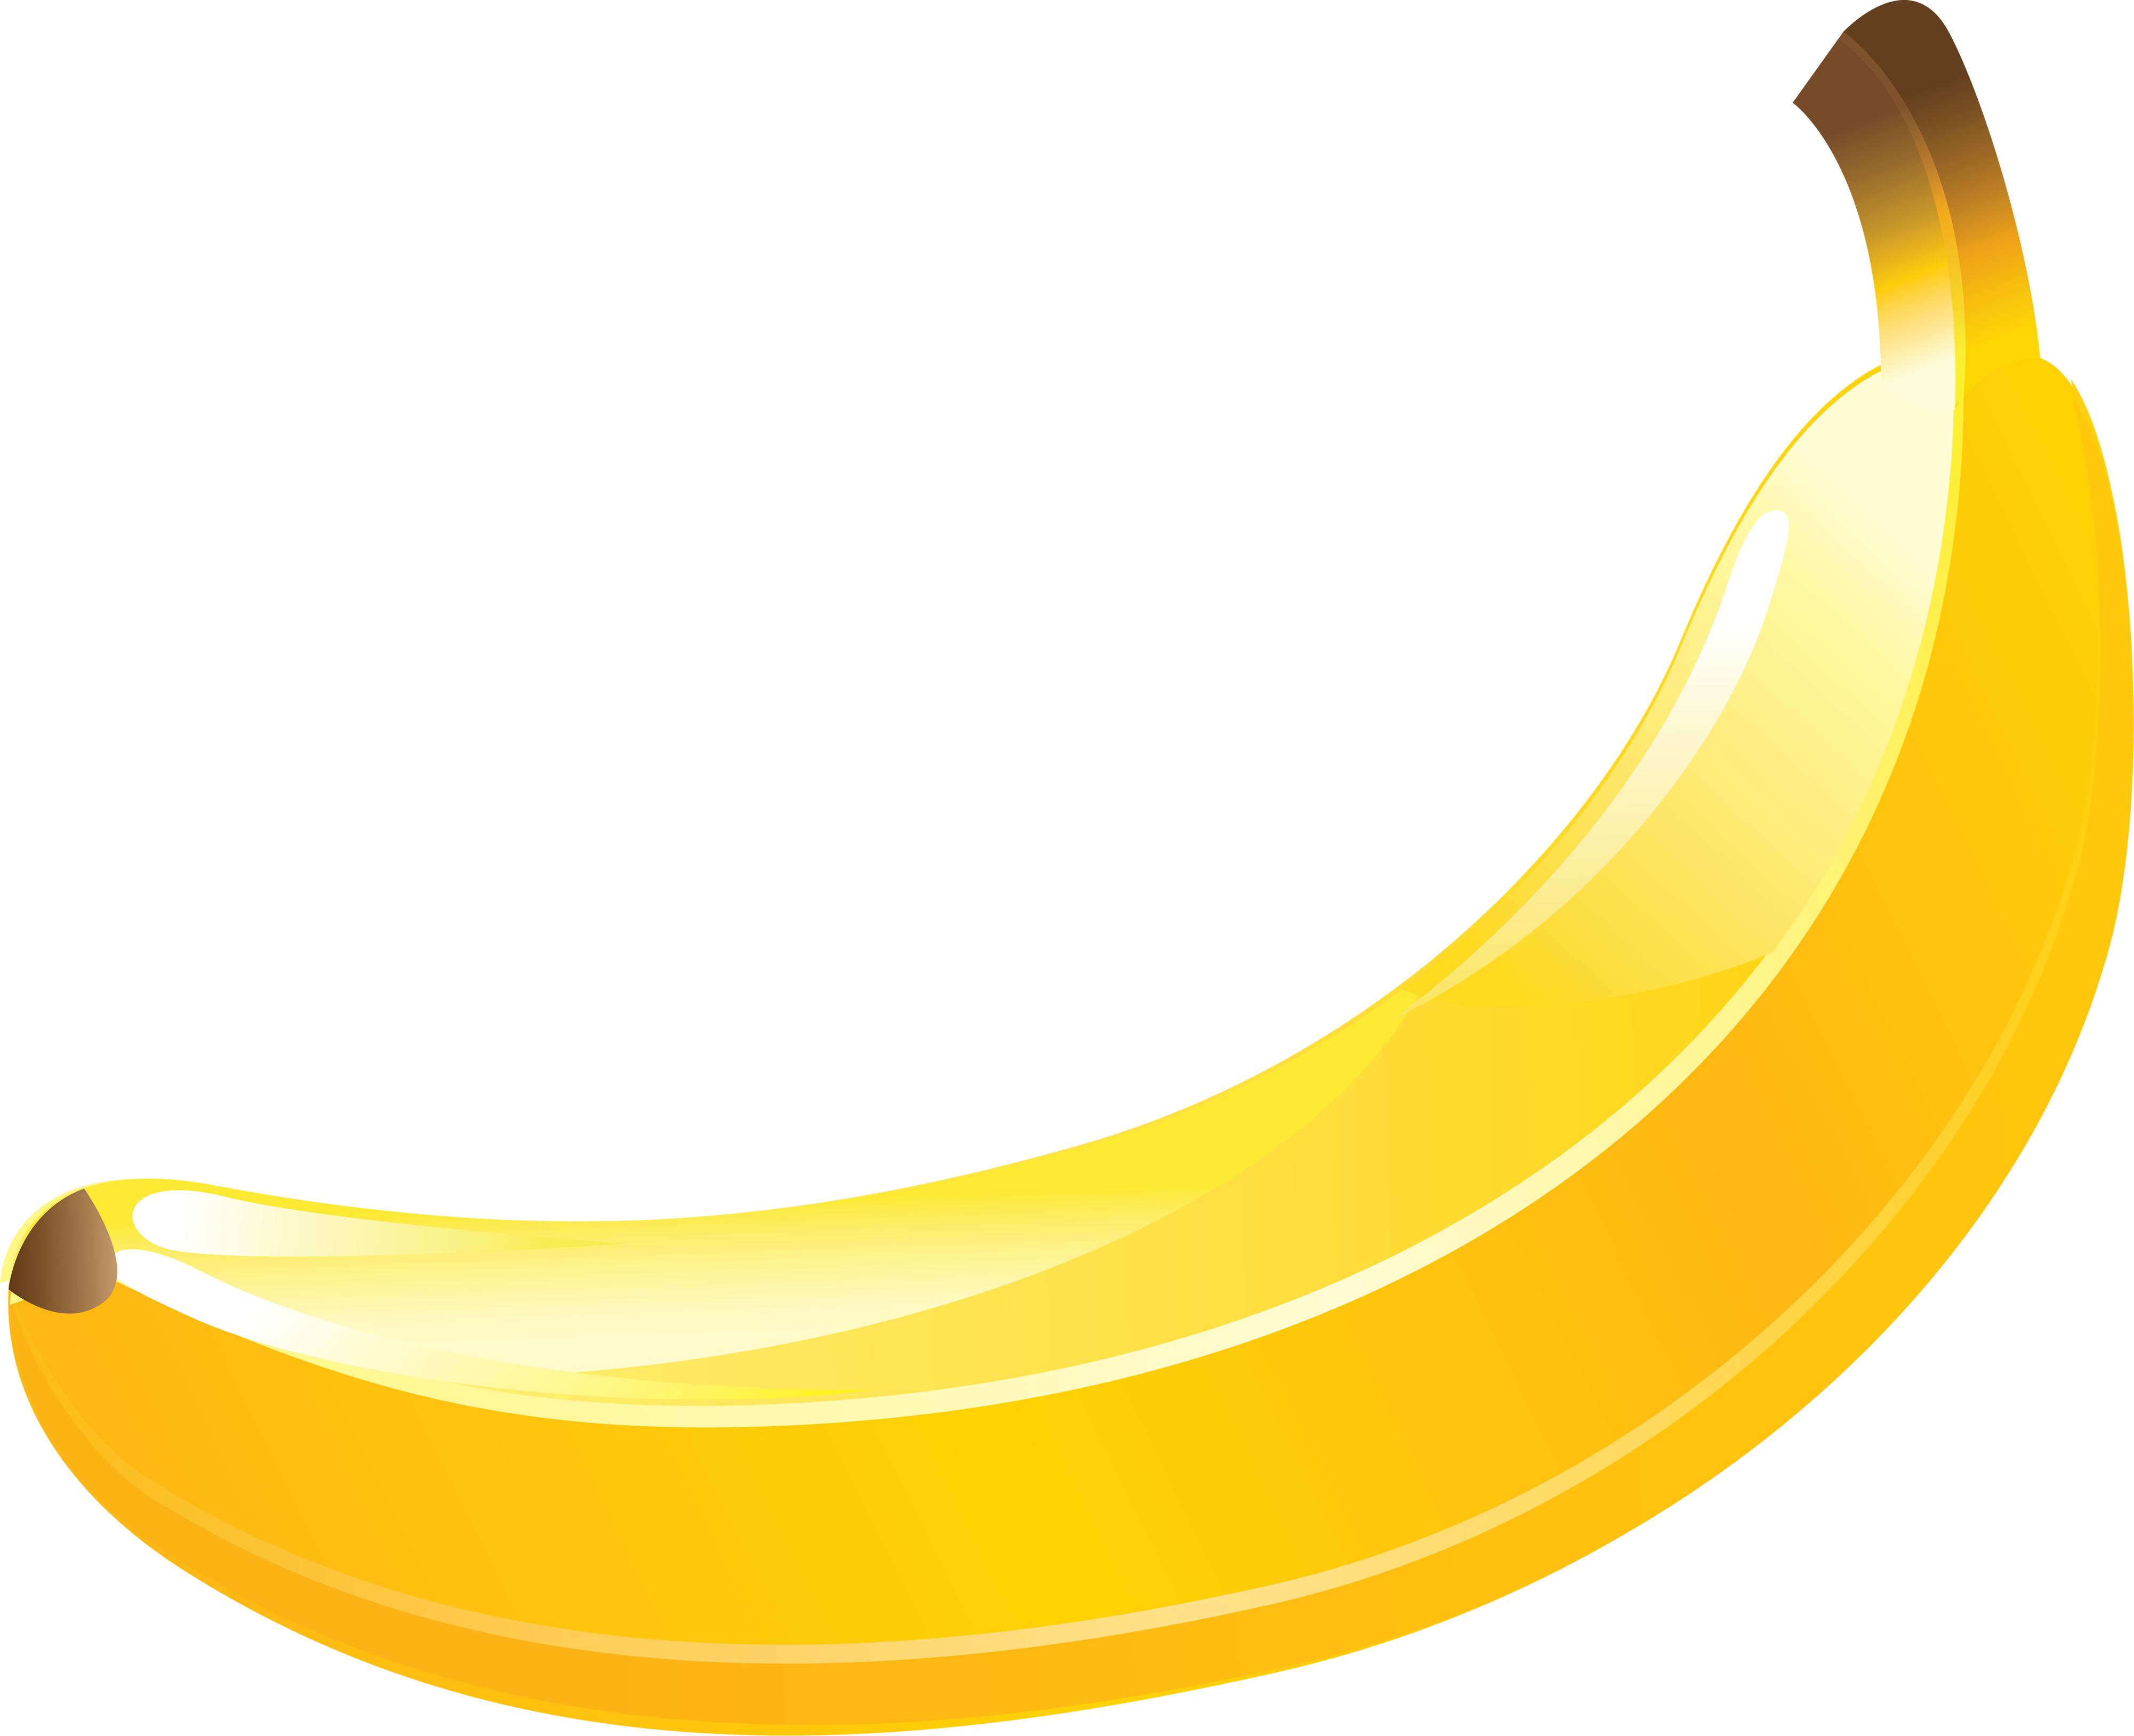 Banana gialla